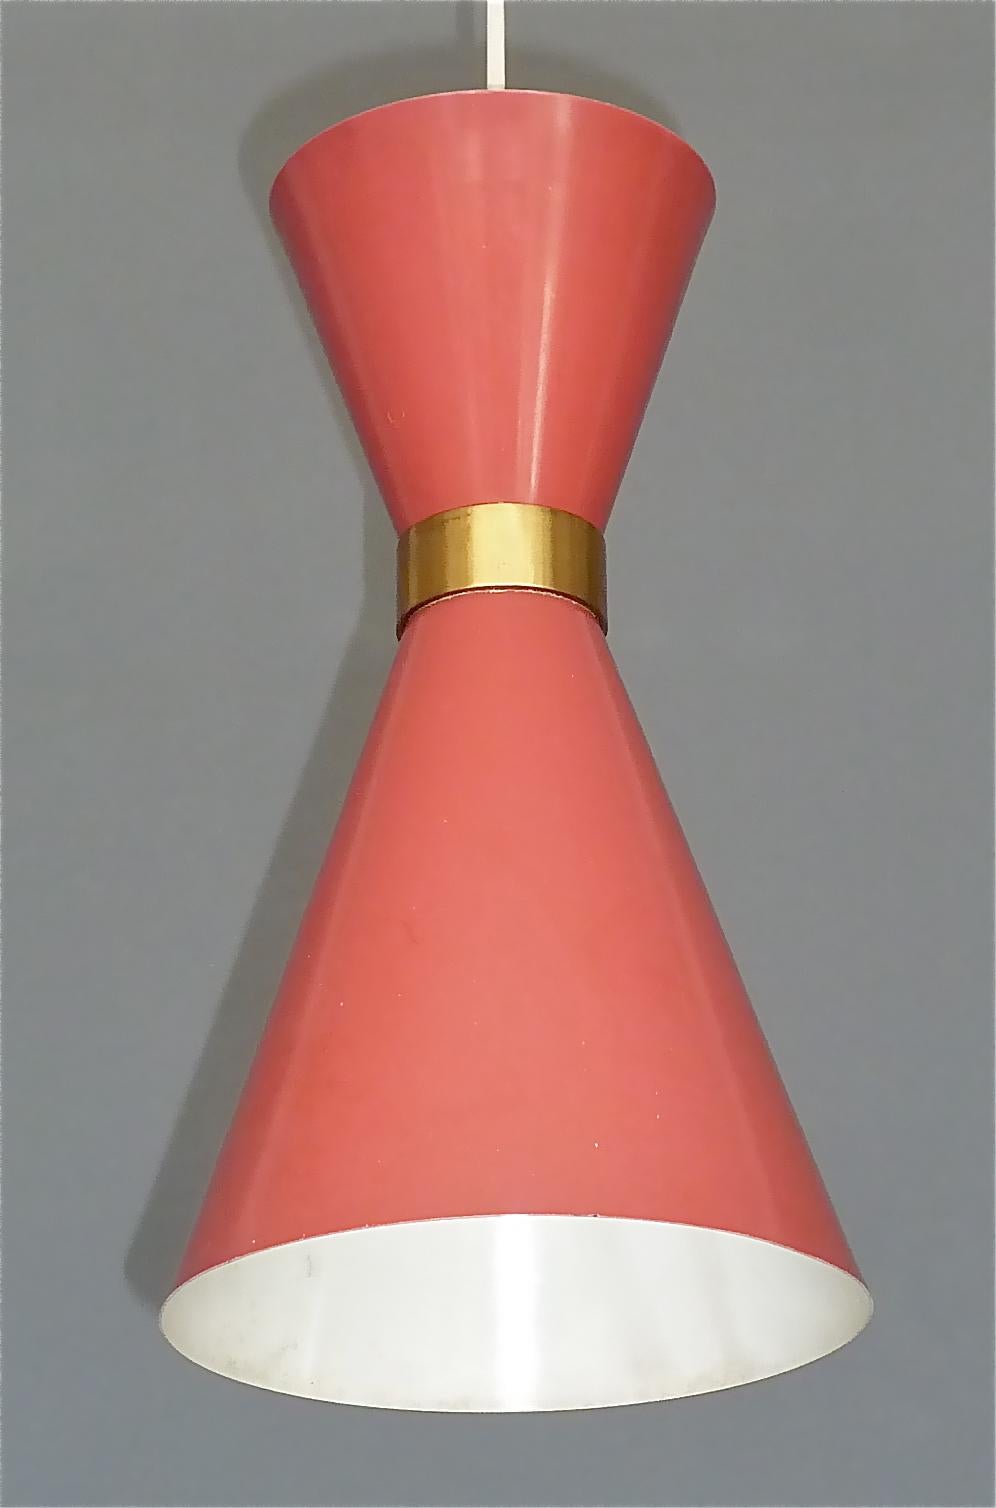 Midcentury Carl Moor BAG Turgi Pendant Lamp Diabolo Red Stilnovo Style 1950s For Sale 6